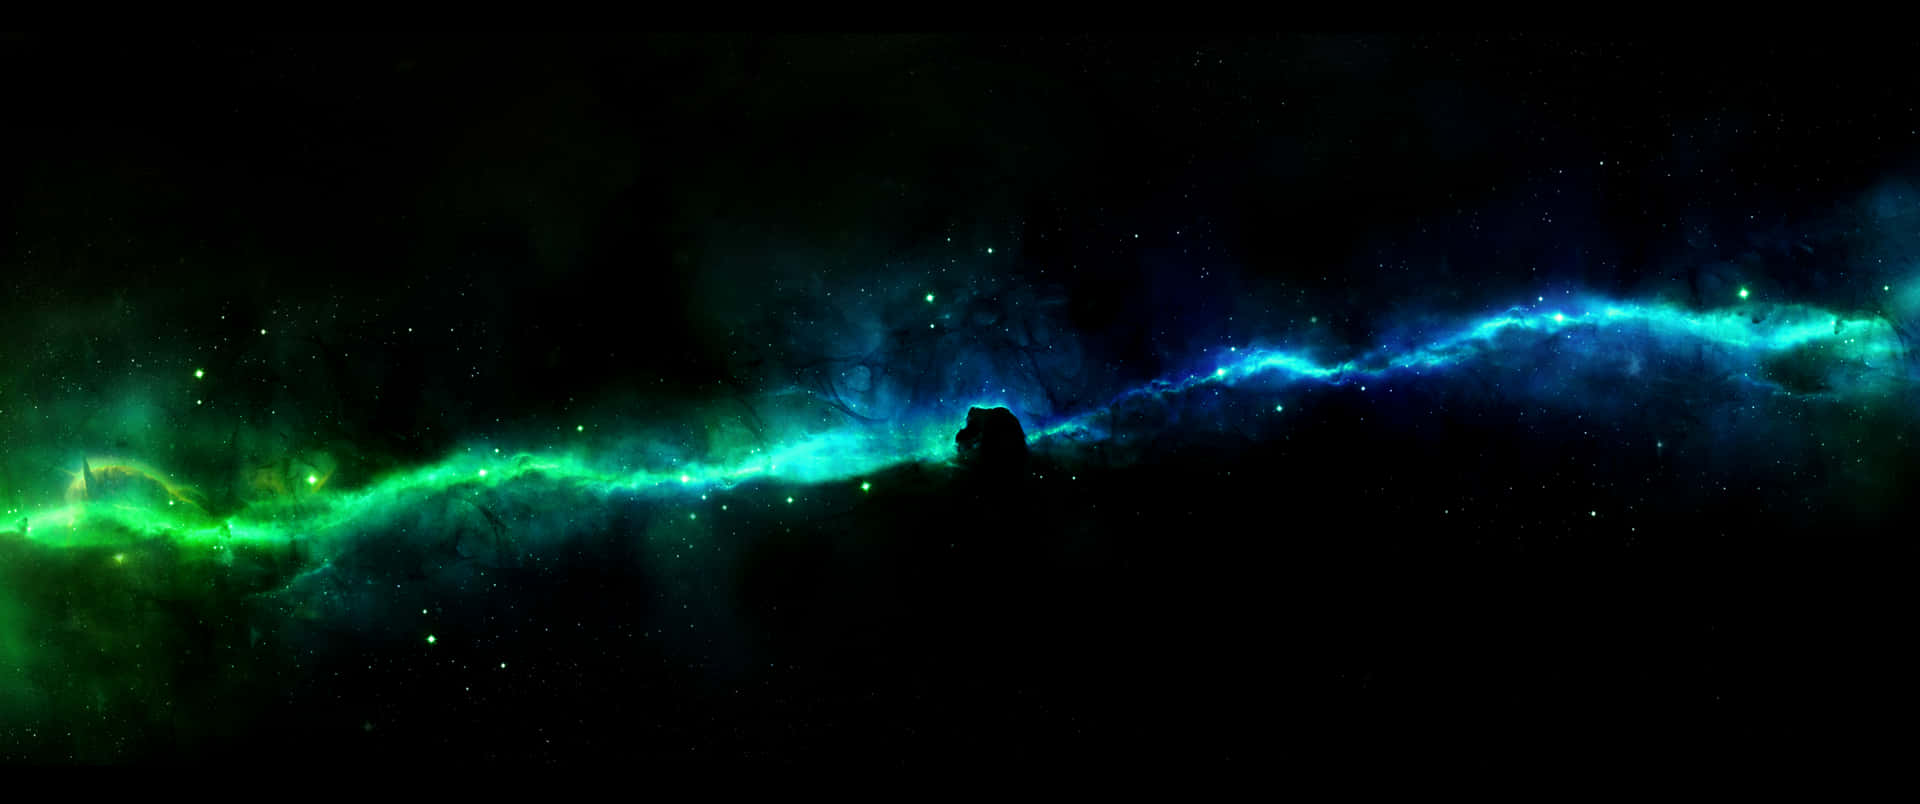 Udforsk dybderne af rummet med Ultra Wide 3440x1440 Space Nebula tapet! Wallpaper